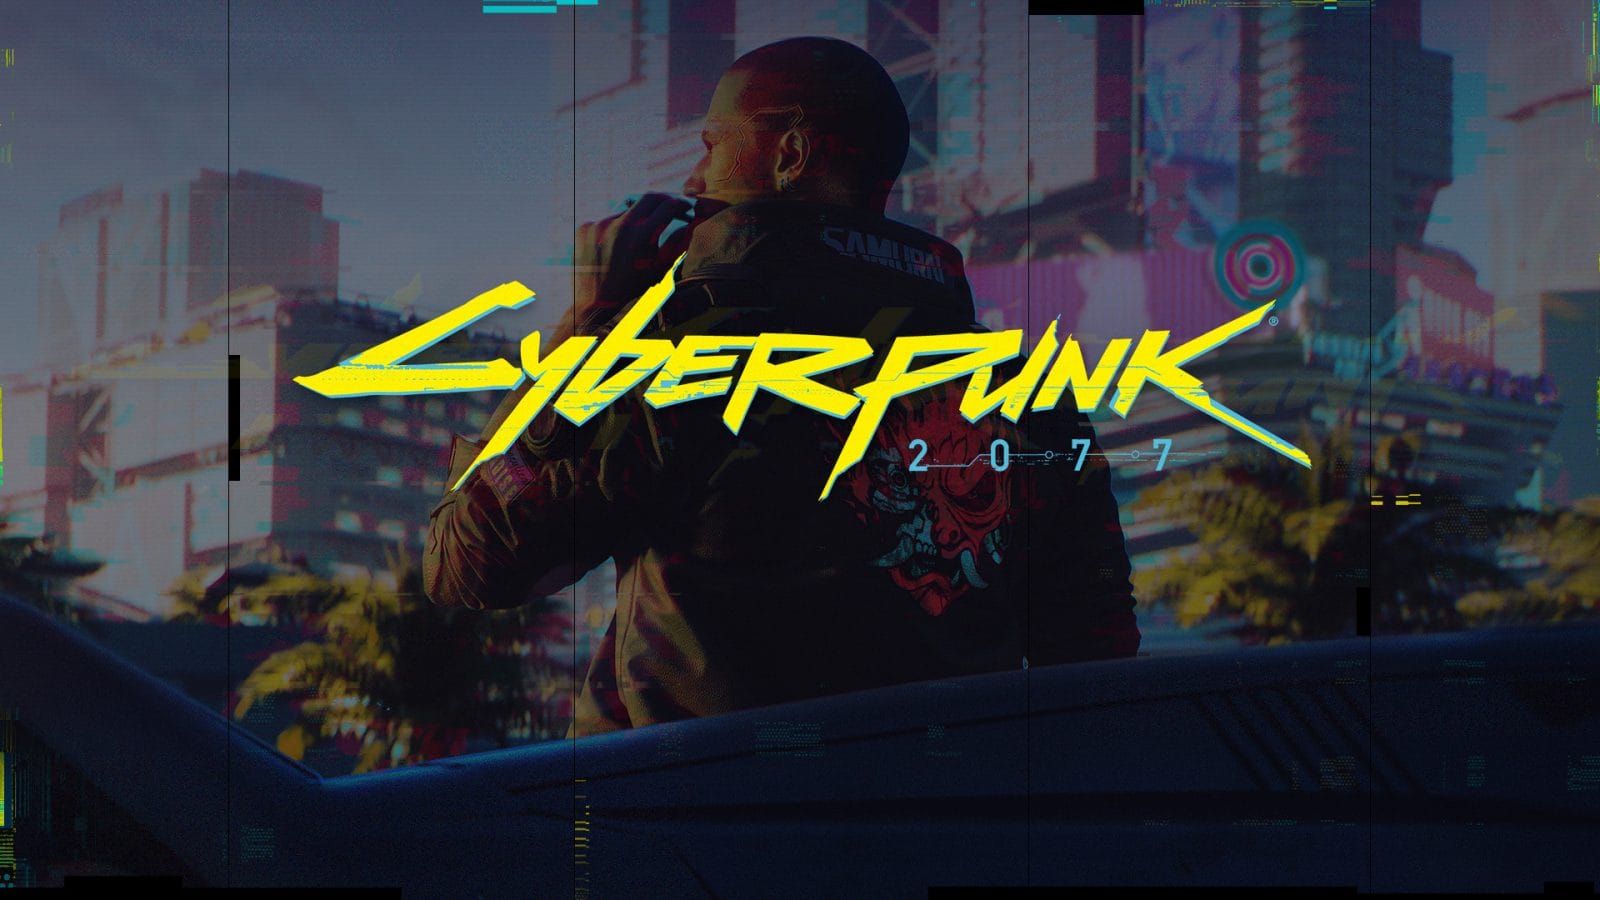 لعبة Cyberpunk 2077 مش هتنزل على Stadia في نفس وقت الإصدار على الكونسول والبي سي